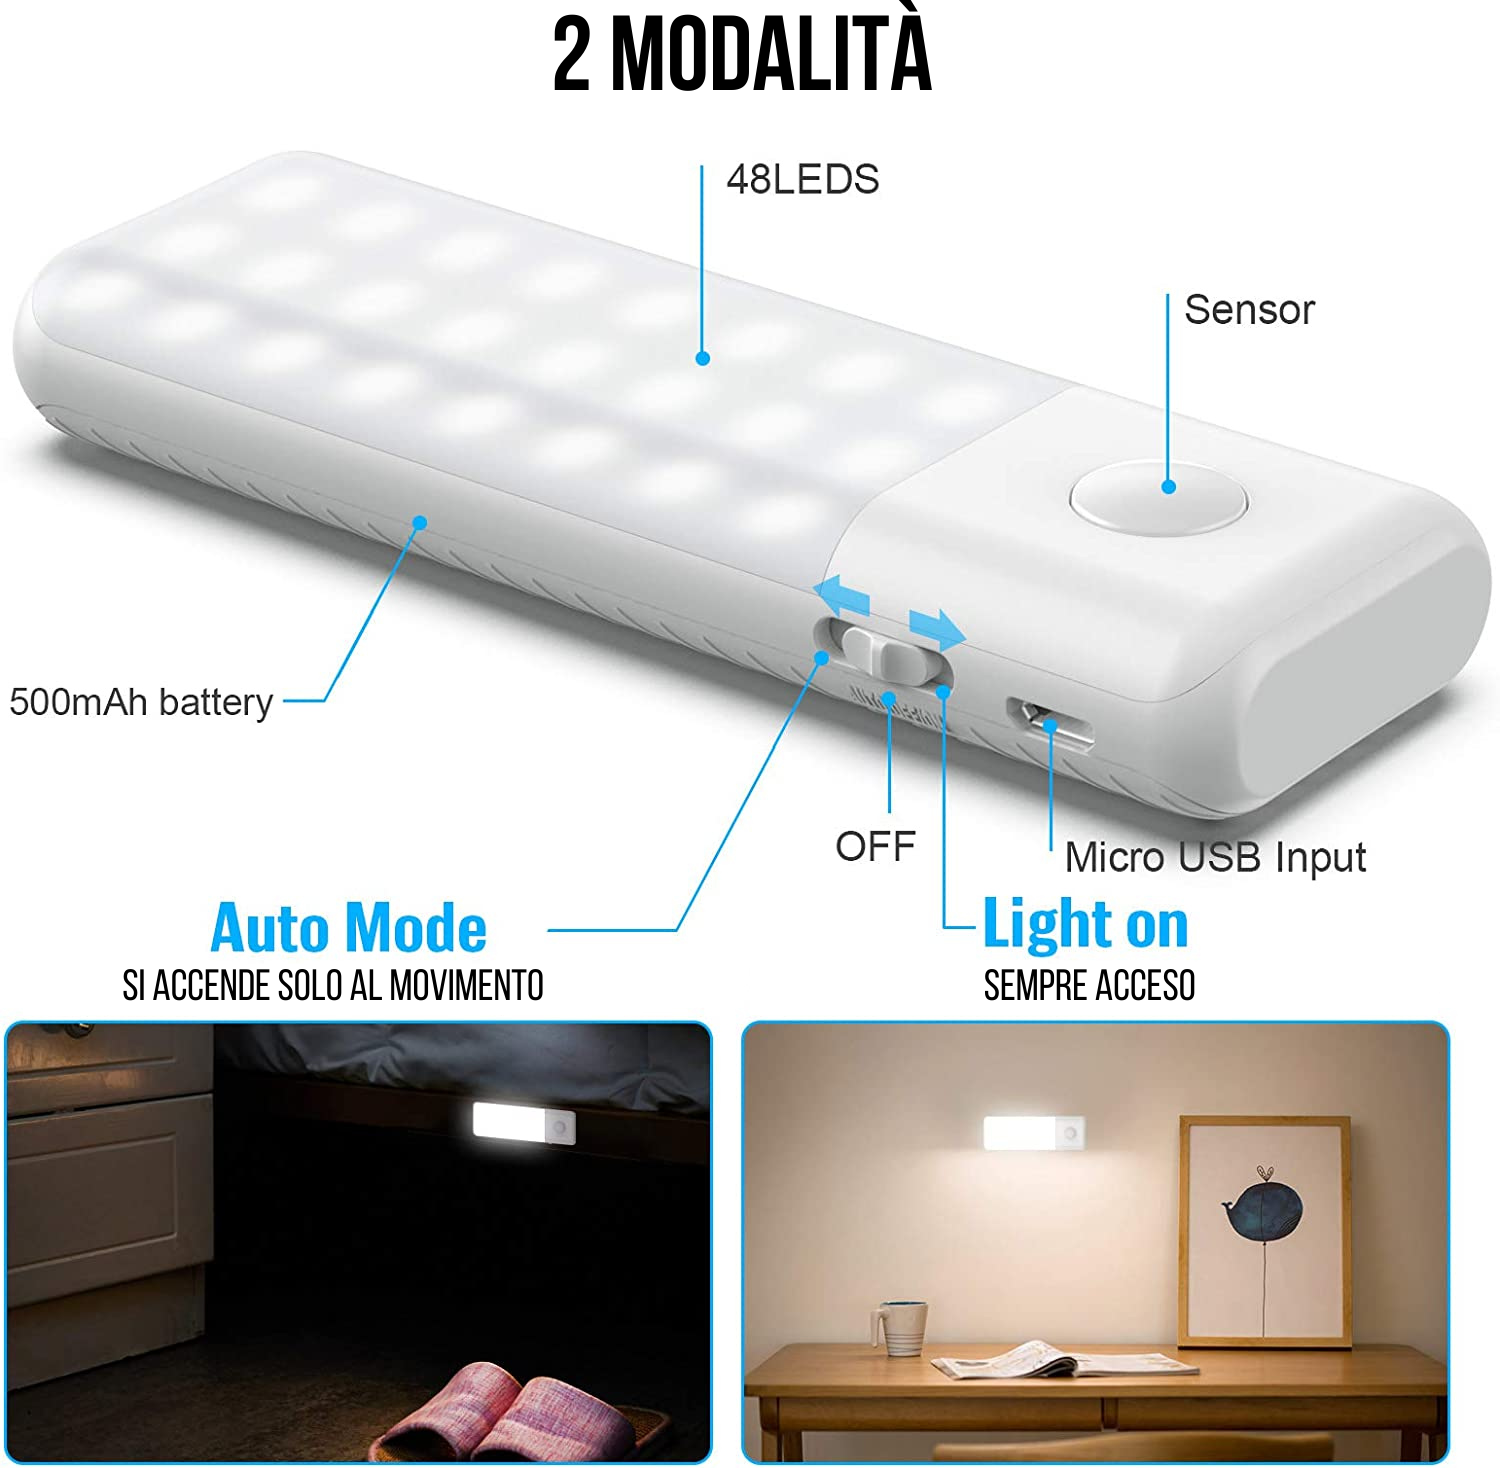 LED con Sensore di Movimento (Per Sgabuzzini, Armadi, Corridoi, Cucina)